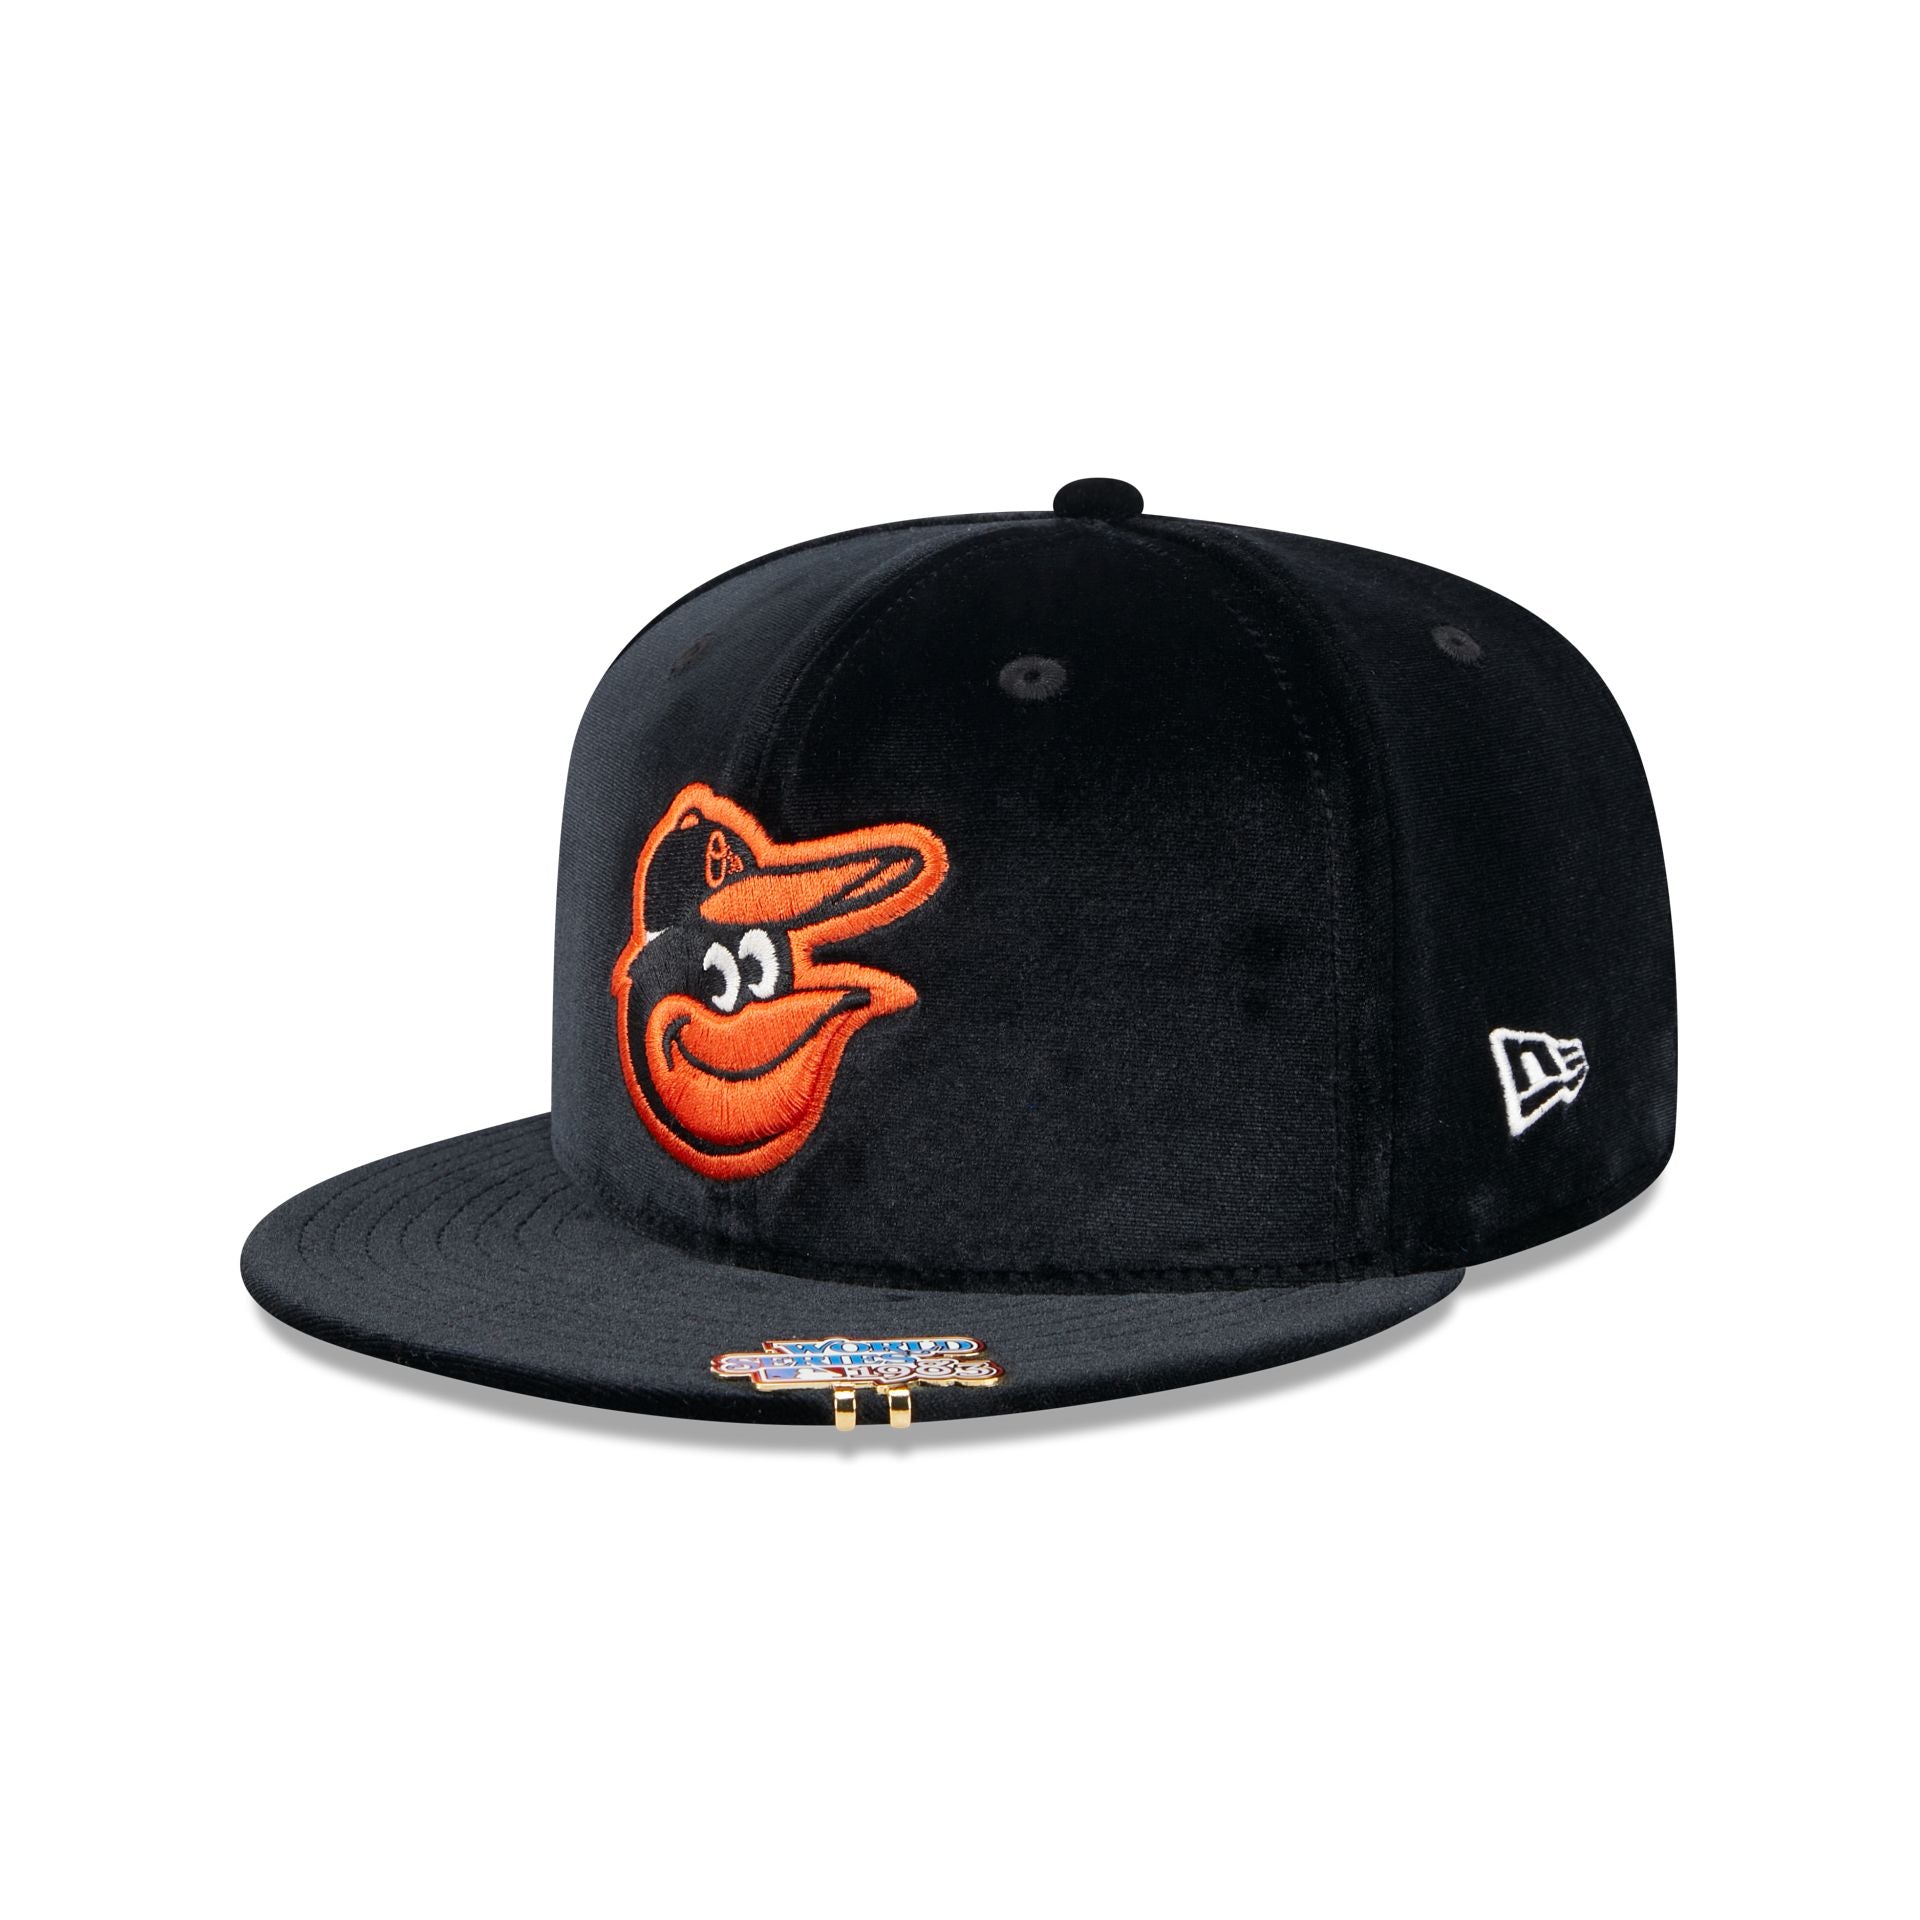 Baltimore Orioles Velvet Visor Clip 59FIFTY Fitted Hat